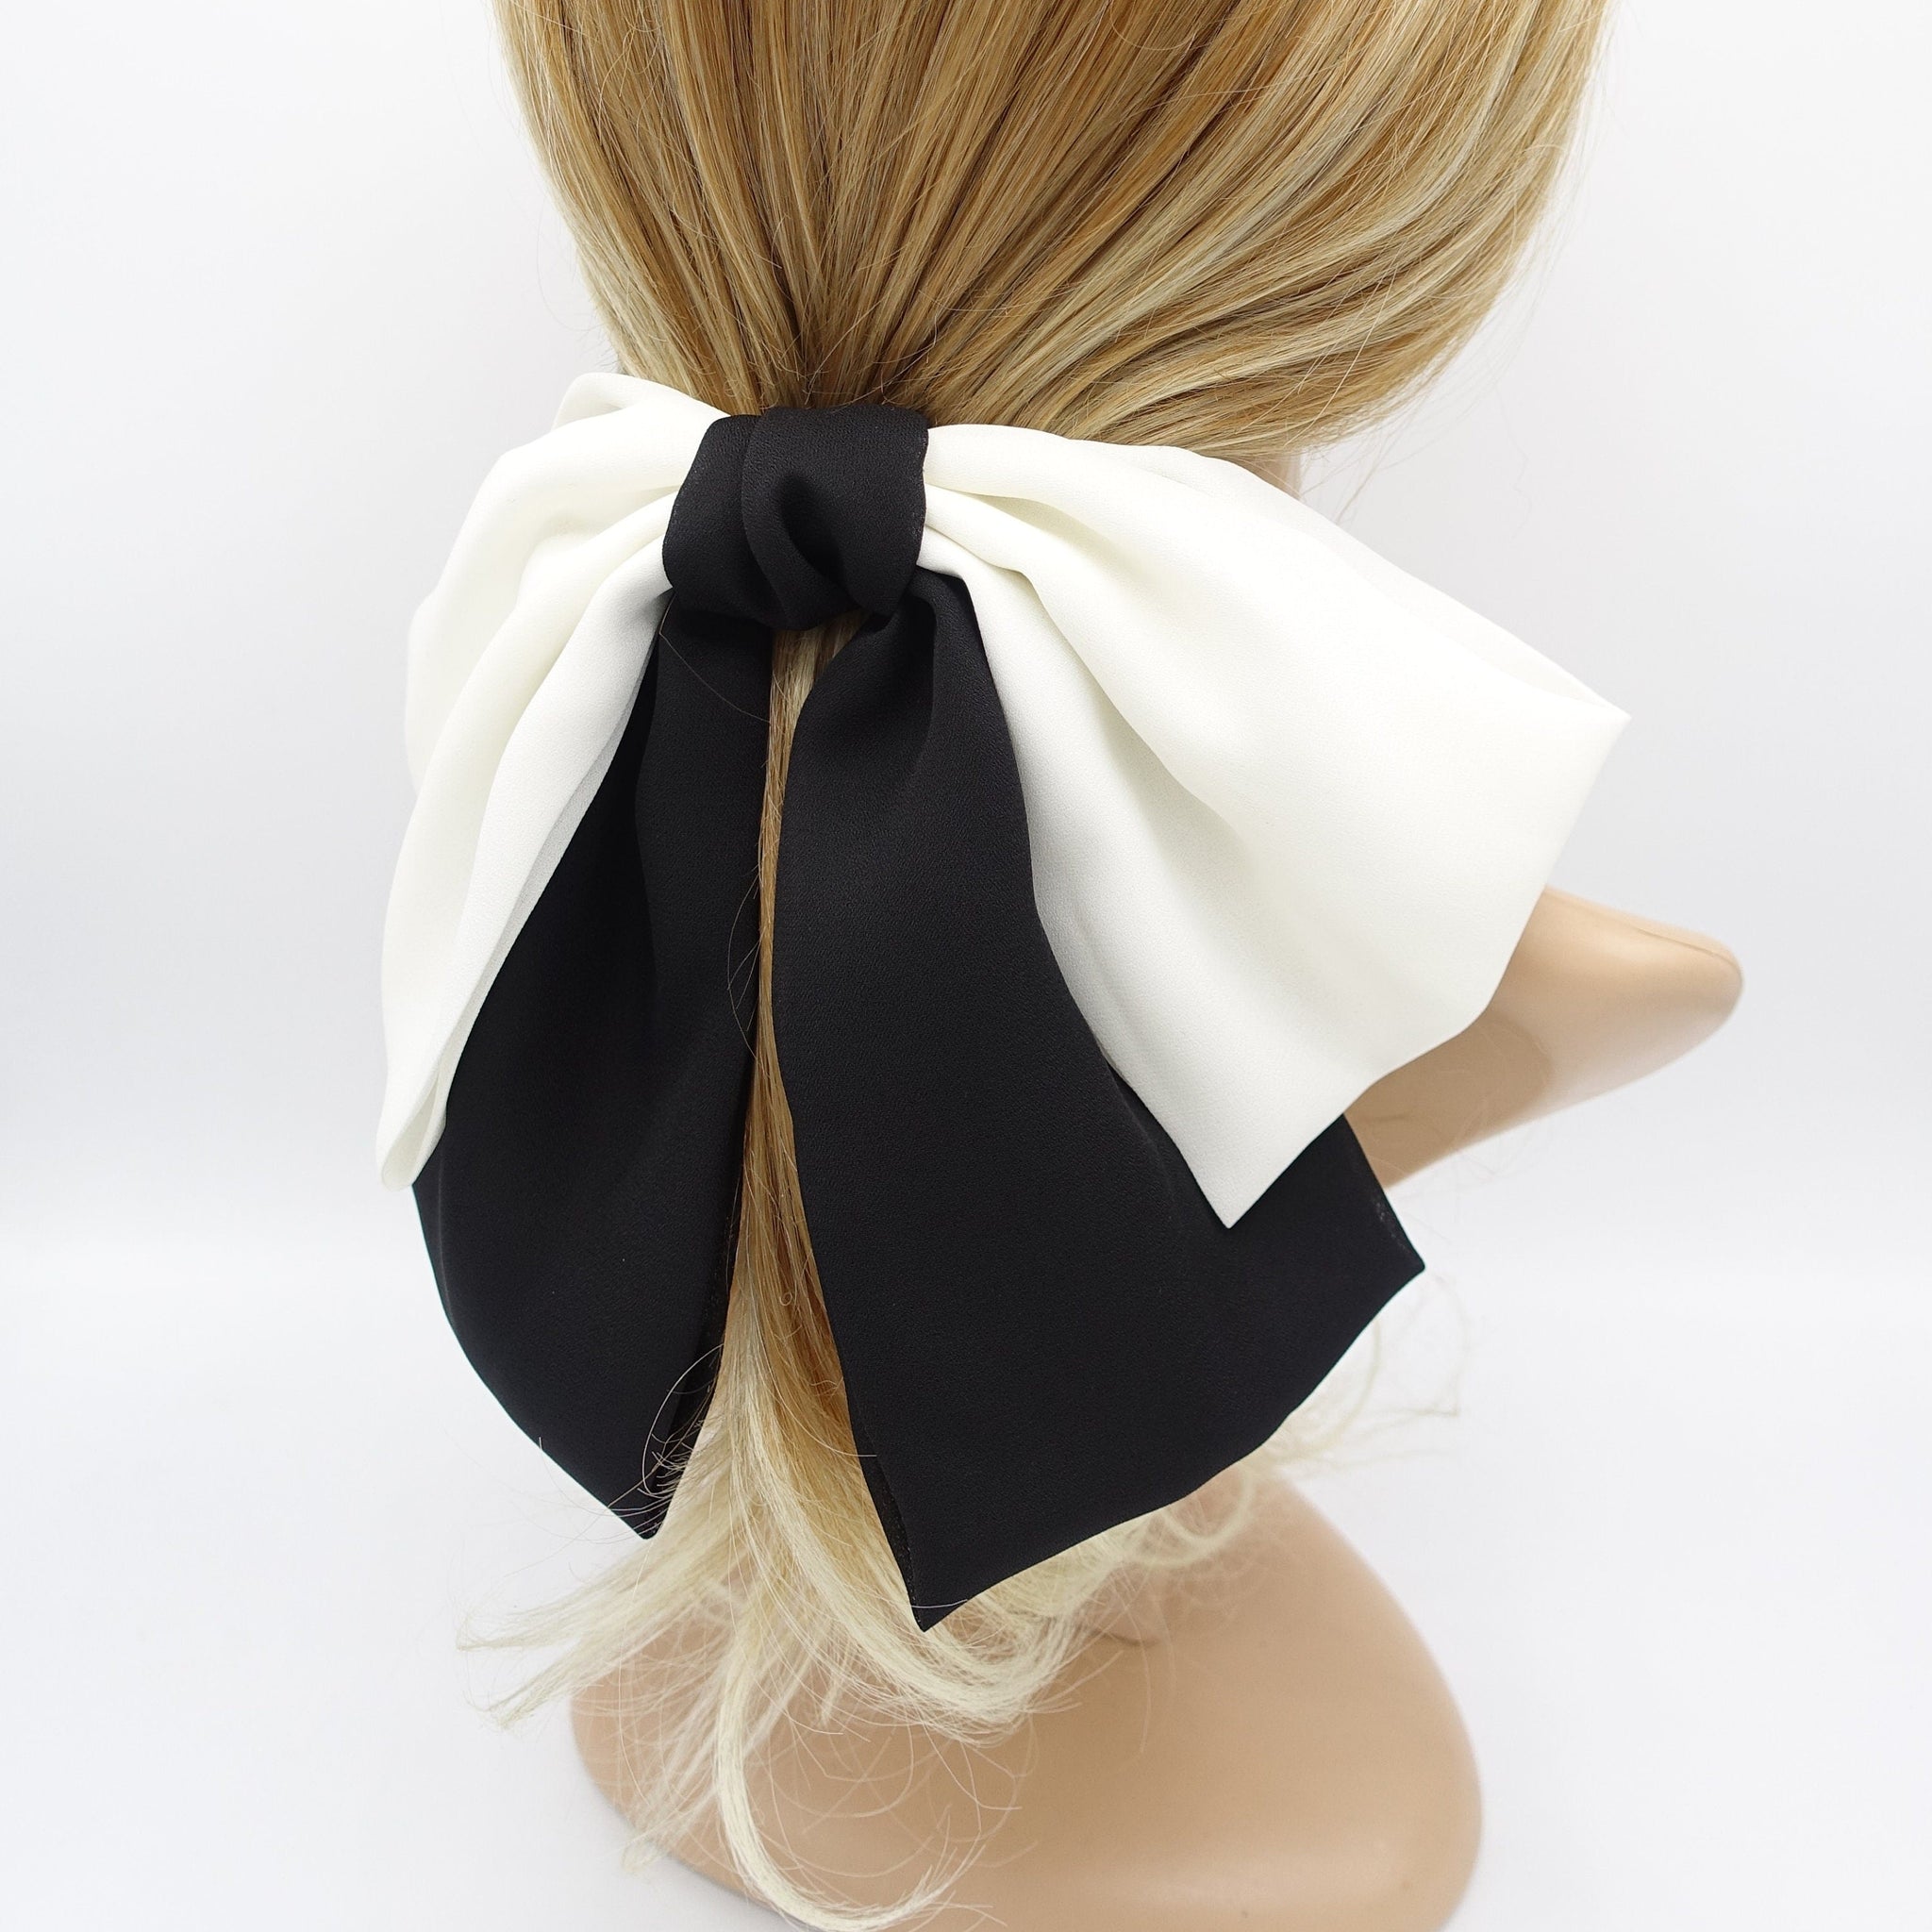 veryshine.com Barrette (Bow) Black & Cream white big hair bow, drape hair bow, chiffon hair bow for women